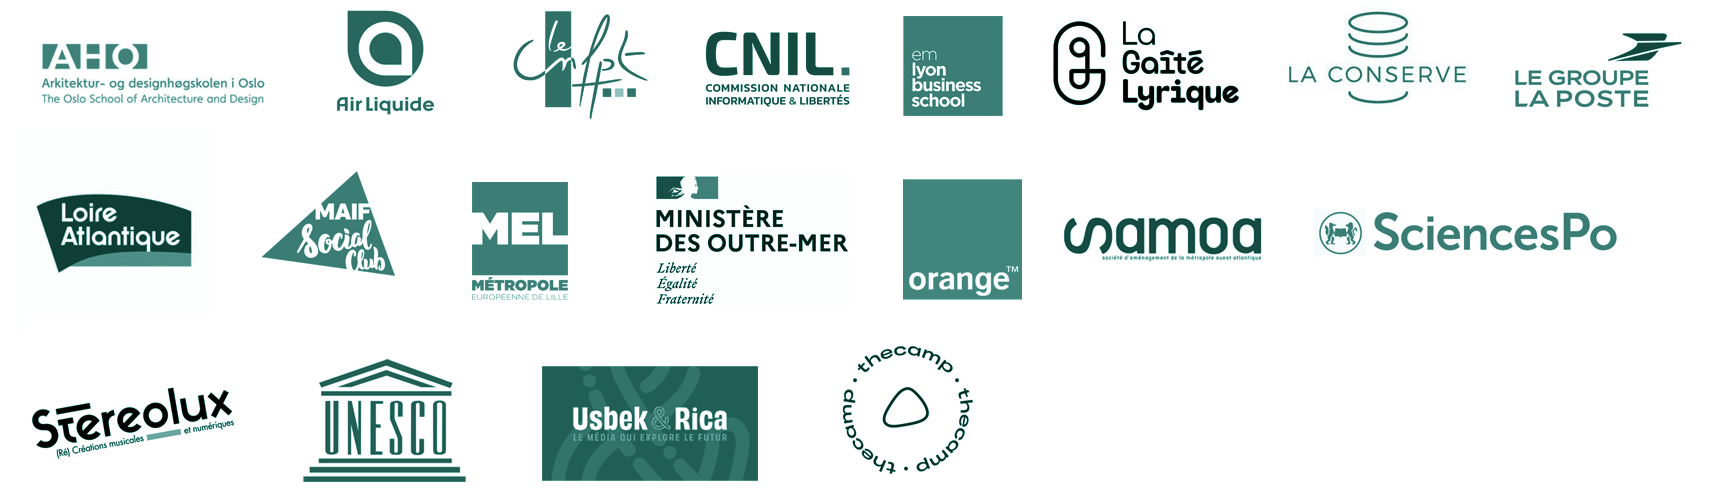 Les clients d'Oblique Futures, avec notamment la CNIL, le Ministère des Outre-Mer, la Gaité Lyrique, Usbek&Rica, le MAIF Social Club, le Département de Loire-Atlantique et de nombreux autres acteurs des secteurs privés et publics